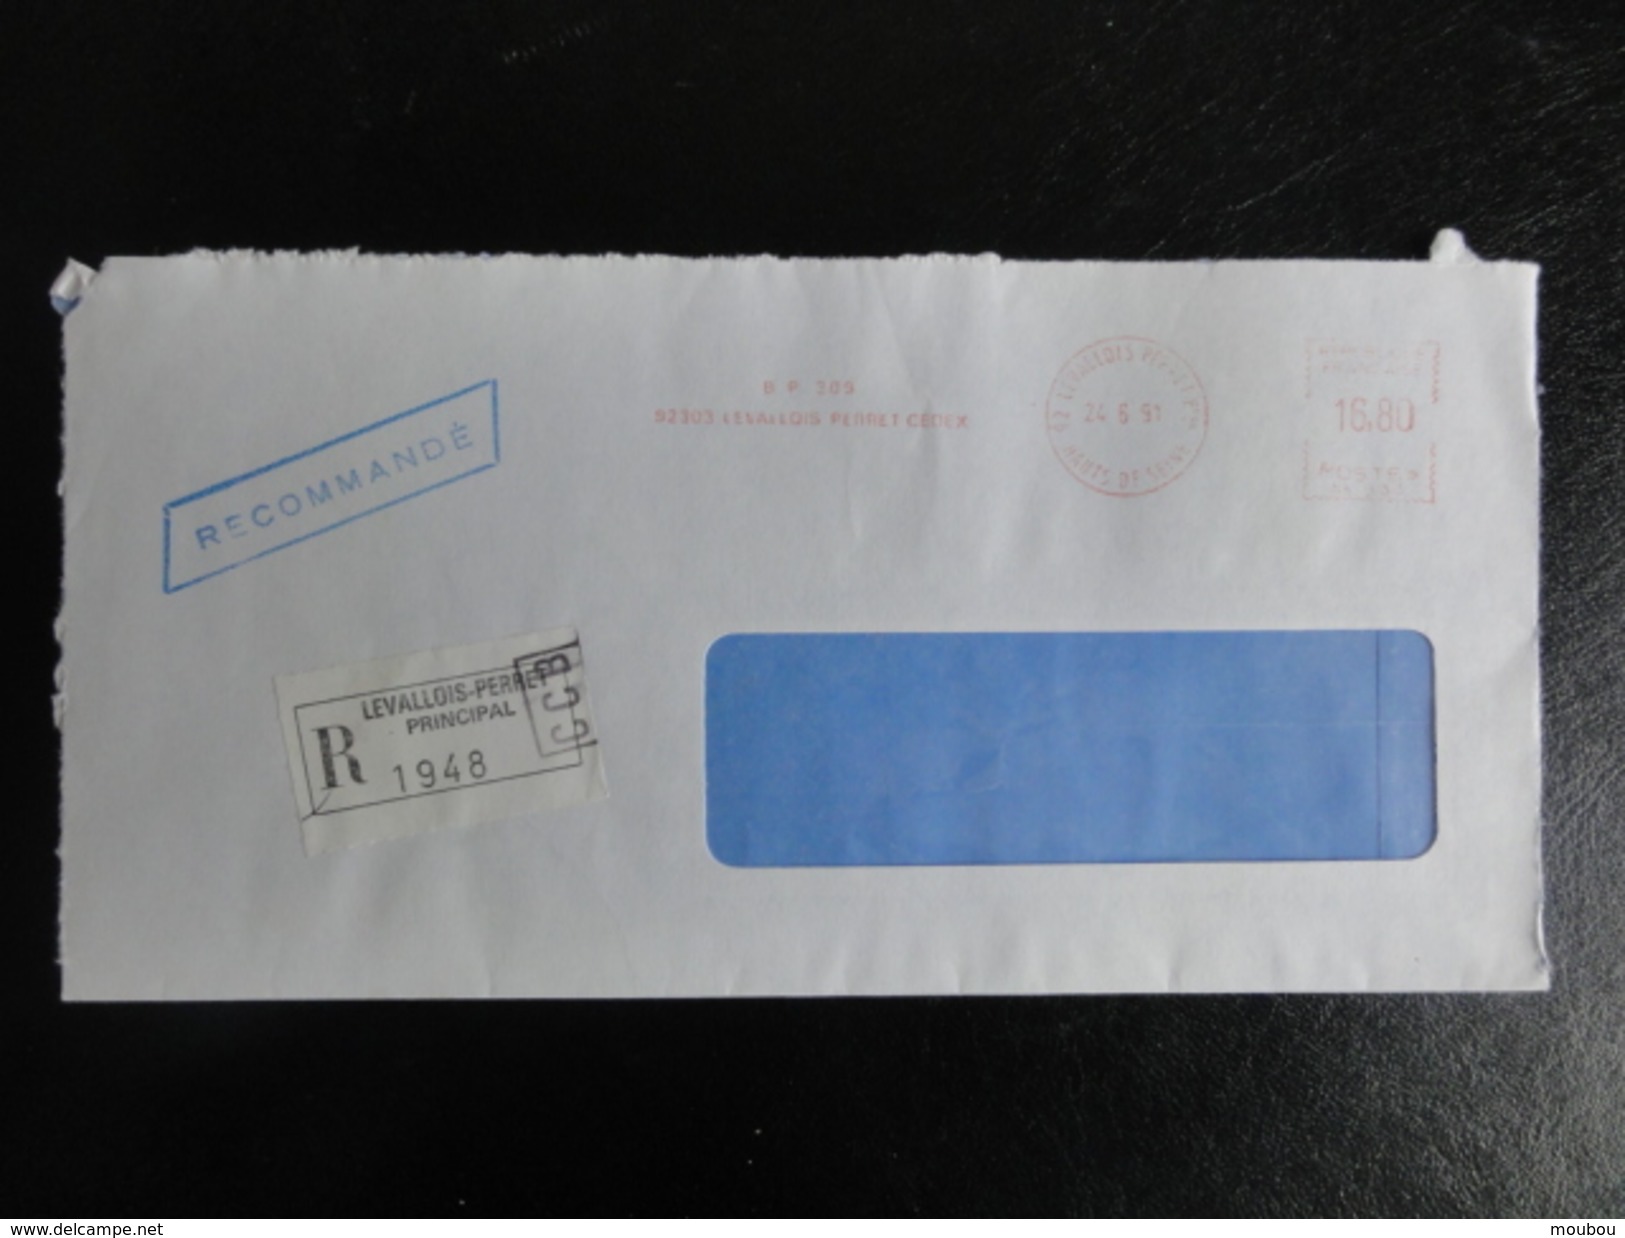 Lettre Recommandée Du 24/6/1991 - Avec étiquette Collante De Levallois-Perret - 16,80 Francs-affranchissement Par Ema - Tarifs Postaux